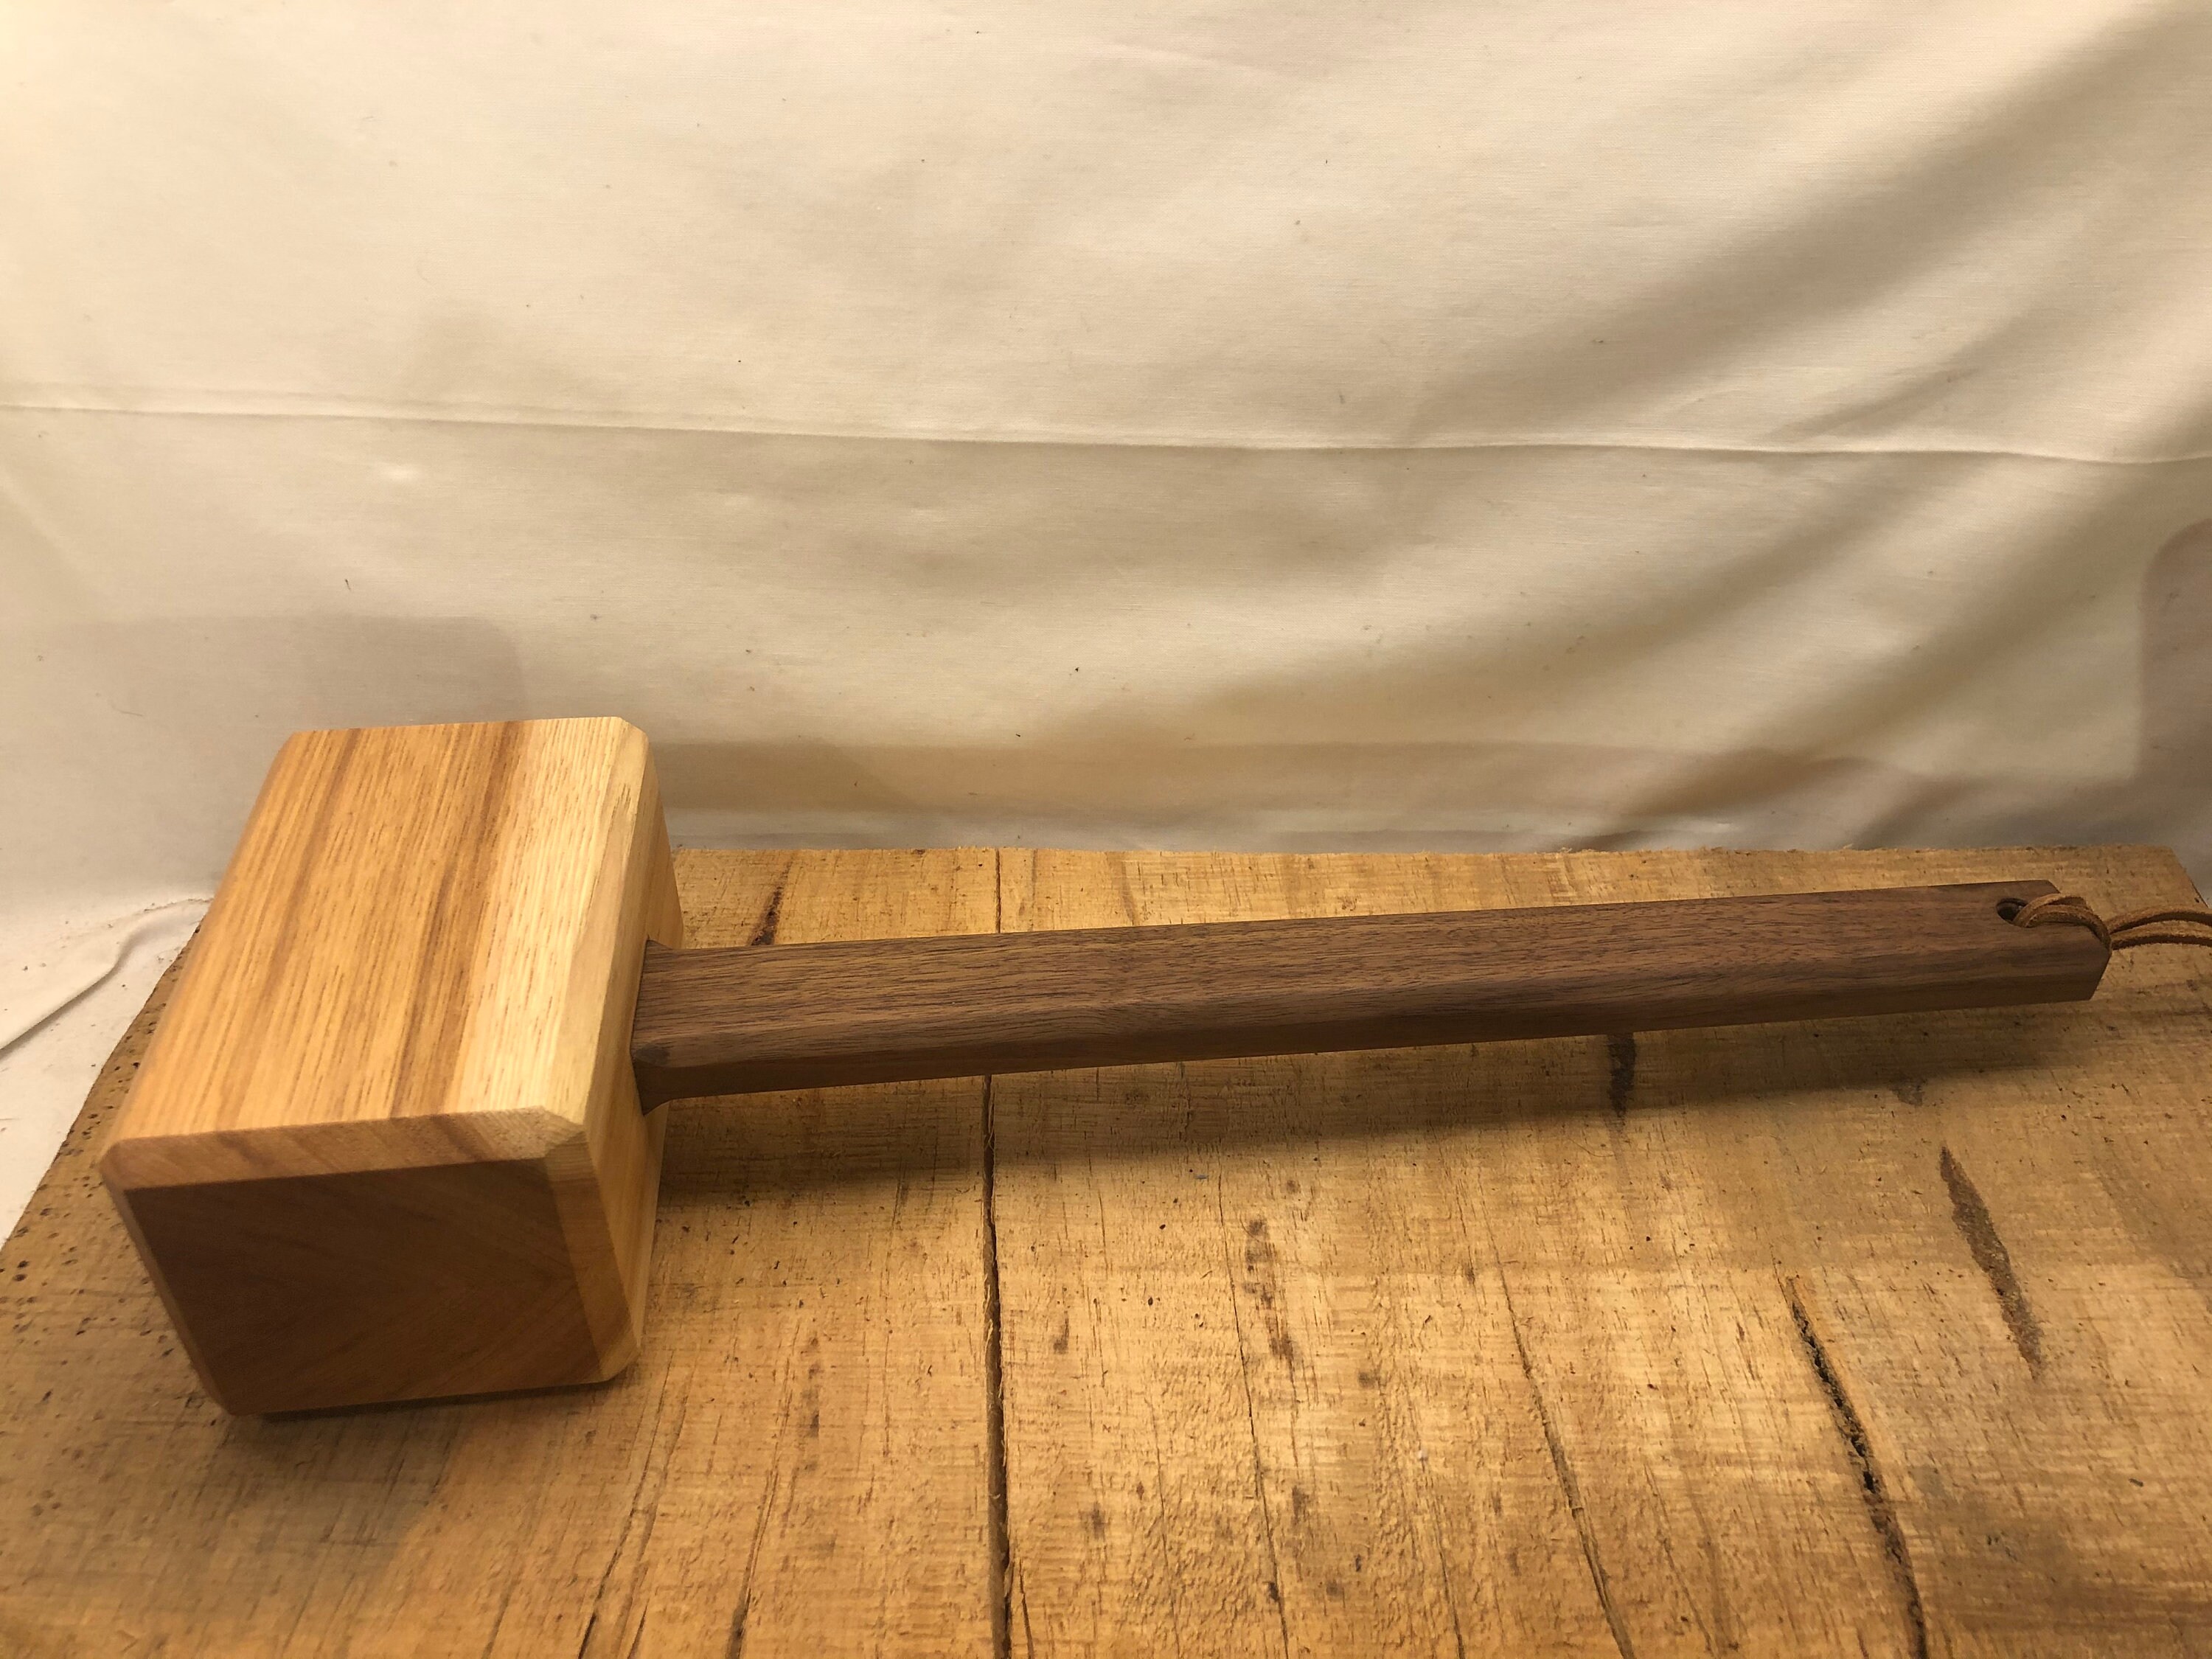 Medium Wooden Mallet 2-3/4